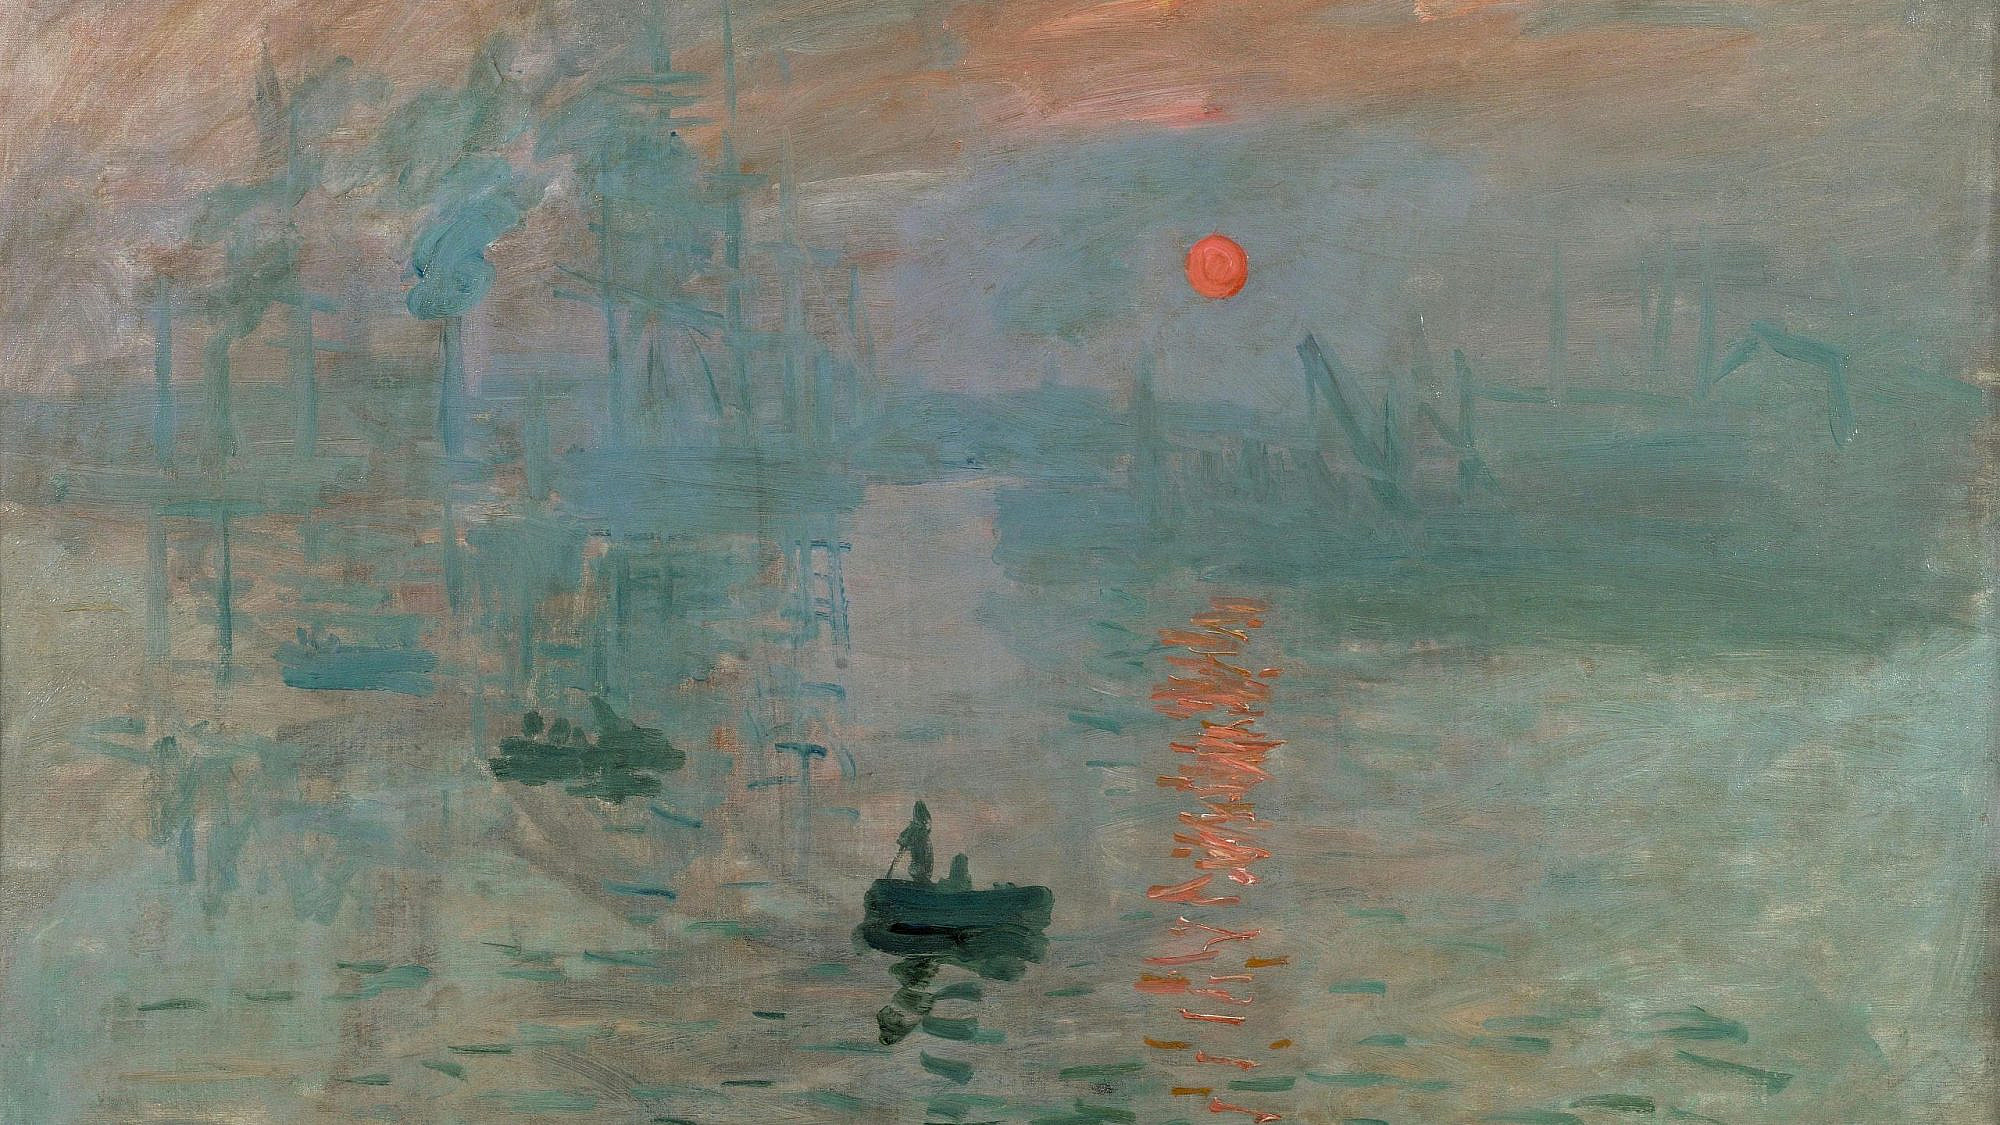 “Impression, Sunrise” (1872) by Claude Monet. Credit: Musée Marmottan, Paris,